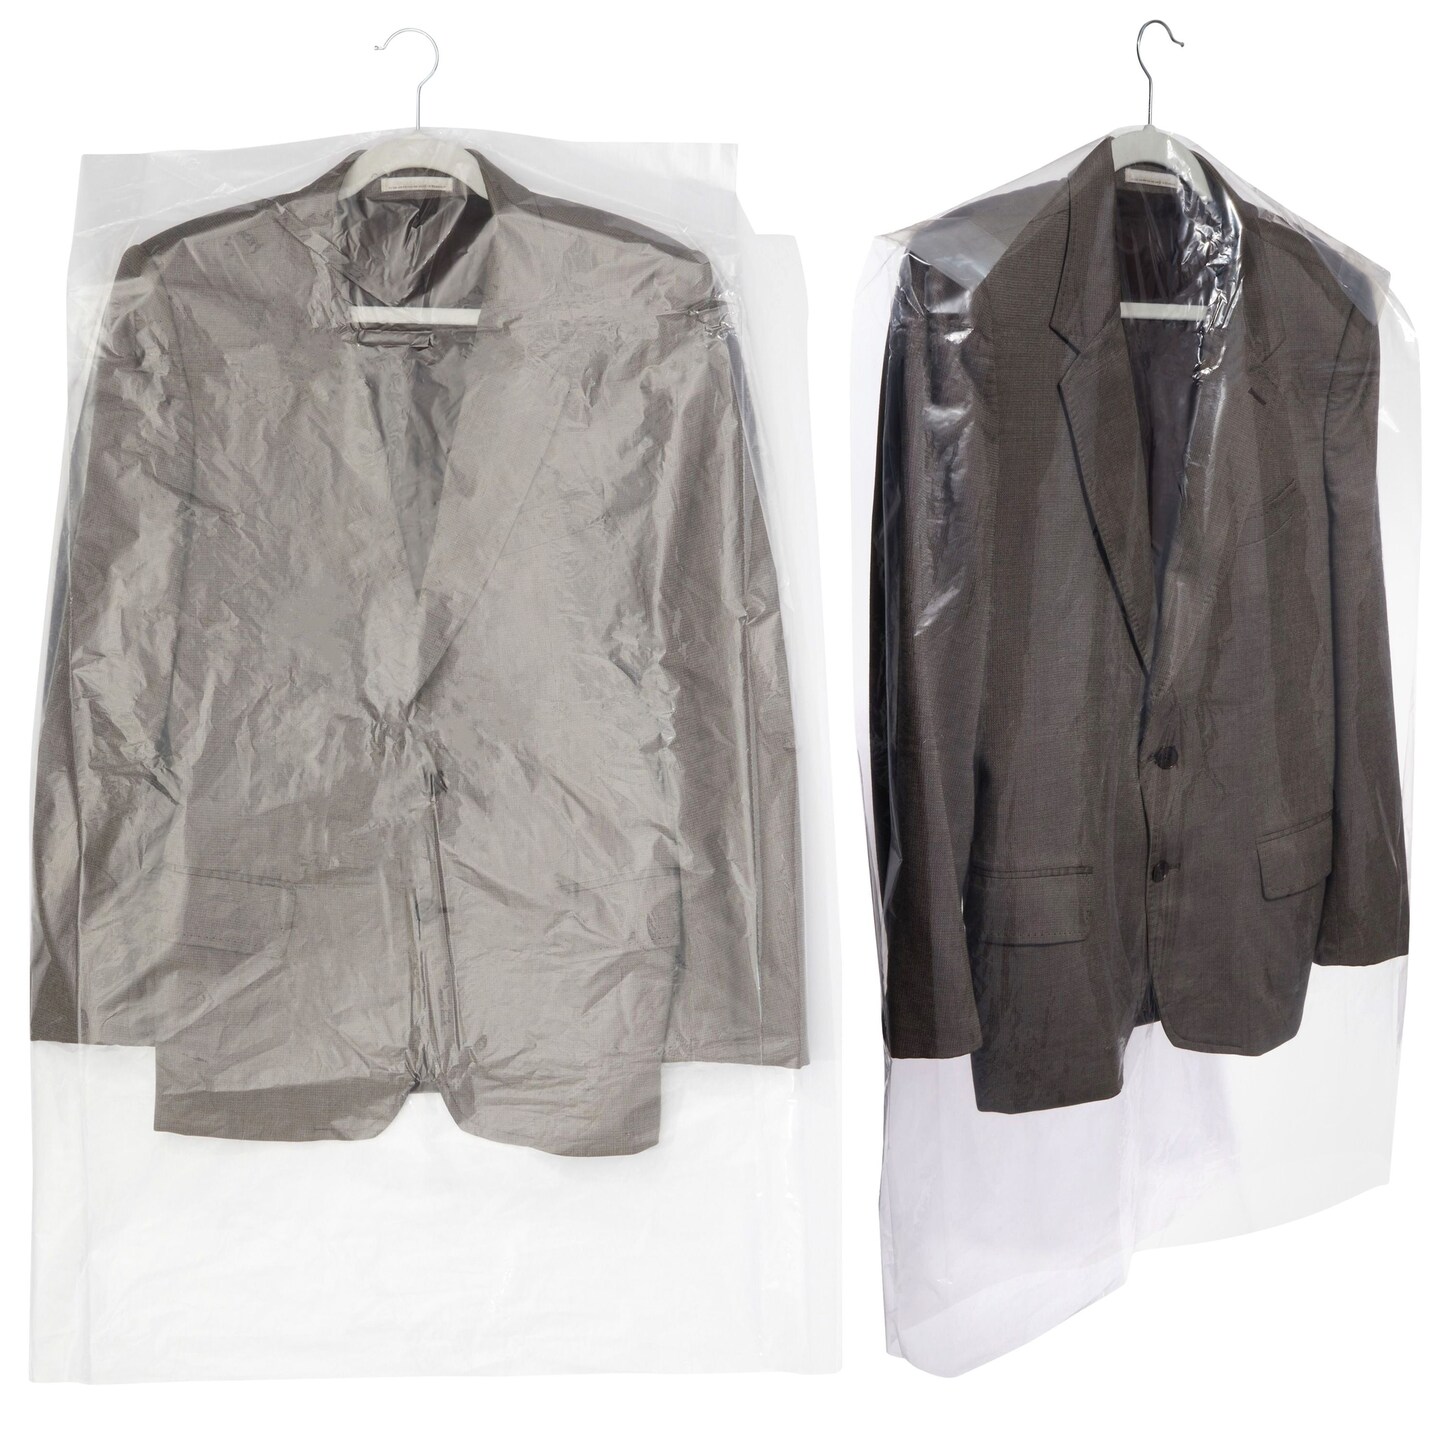 Open Hook Metal Suit Hangers In Bulk Case Of 50 Pieces